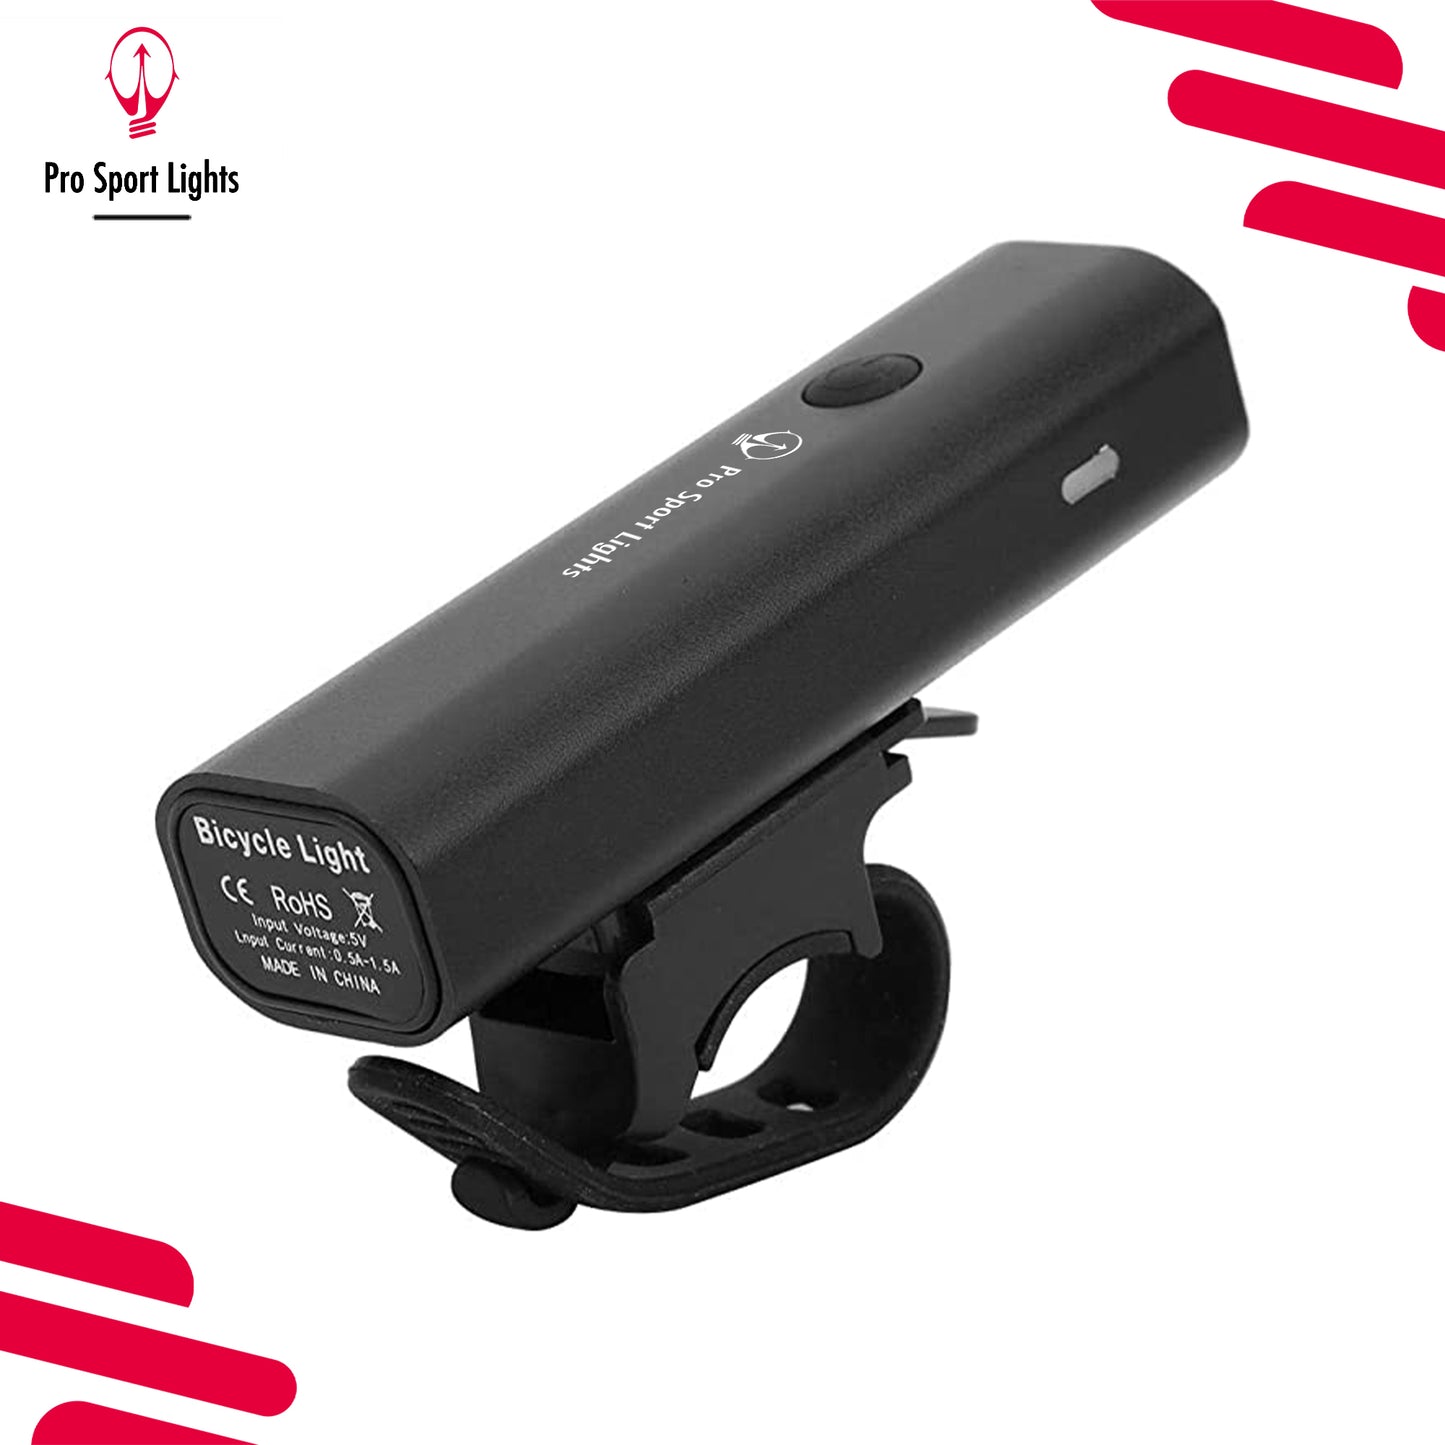 Lumières de sport Pro 400 lumens – Lumières de vélo LED micro USB rechargeables